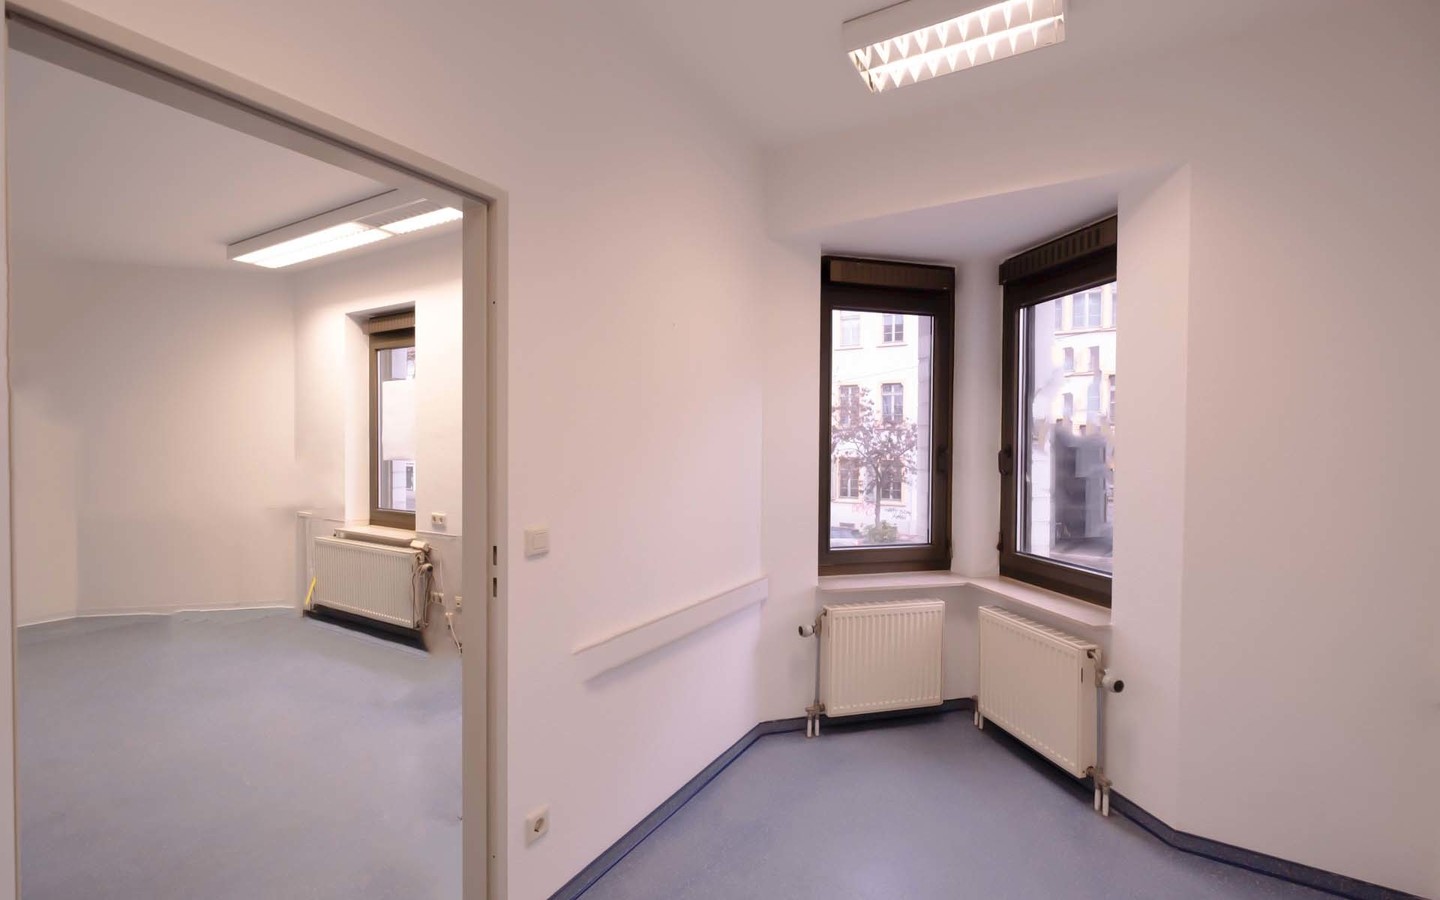 Behandlungszimmer - 200 m² große Praxis in zentraler Lage unweit vom Bismarckplatz mit 6 Stellplätzen